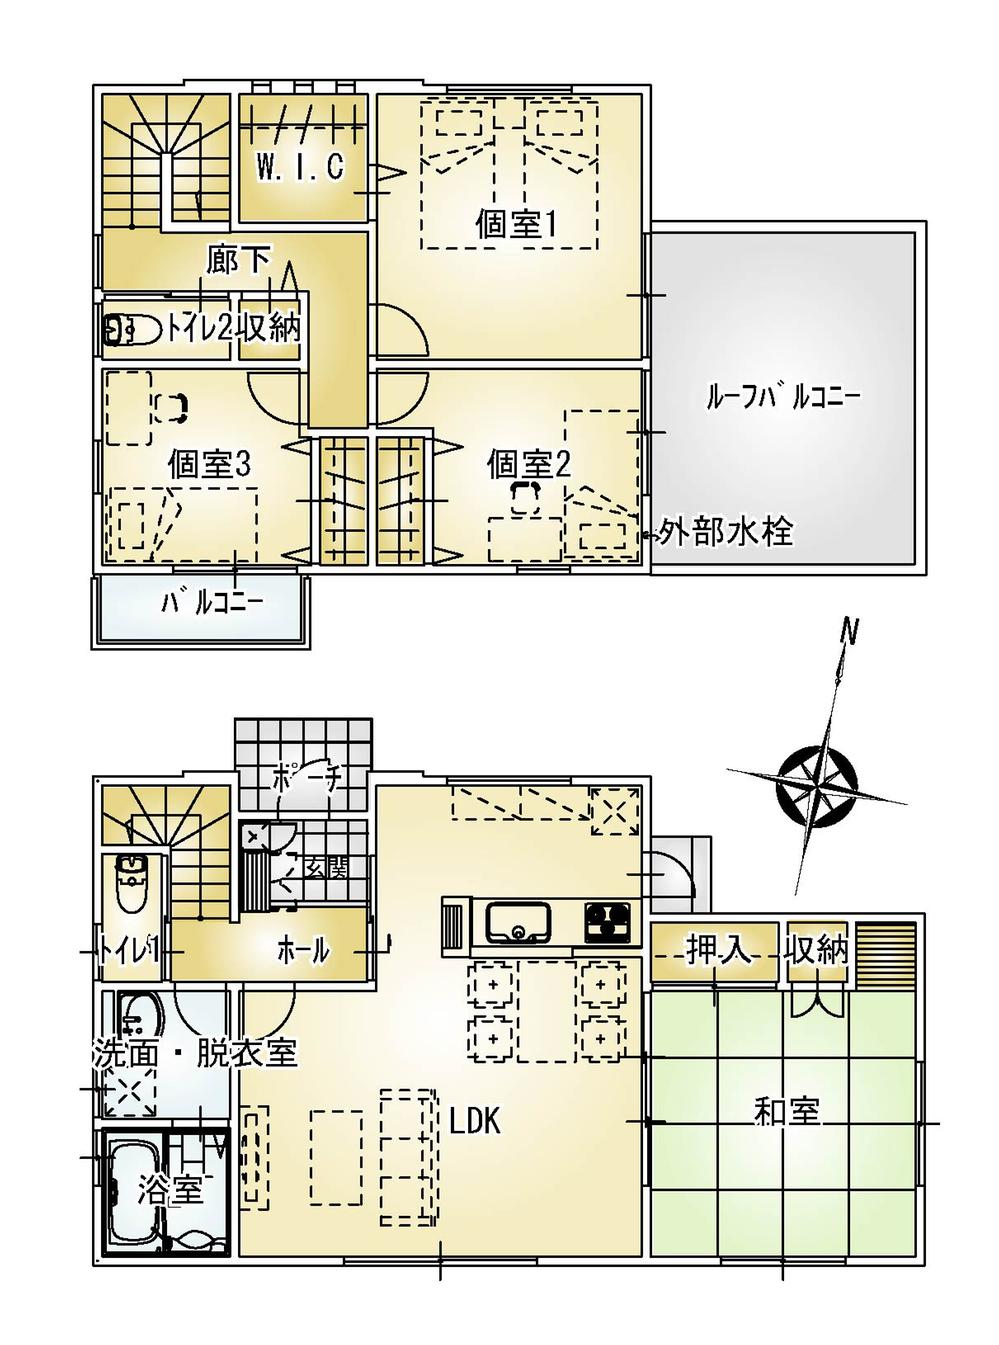 Floor plan. 23,900,000 yen, 4LDK + S (storeroom), Land area 250.96 sq m , Building area 108.47 sq m